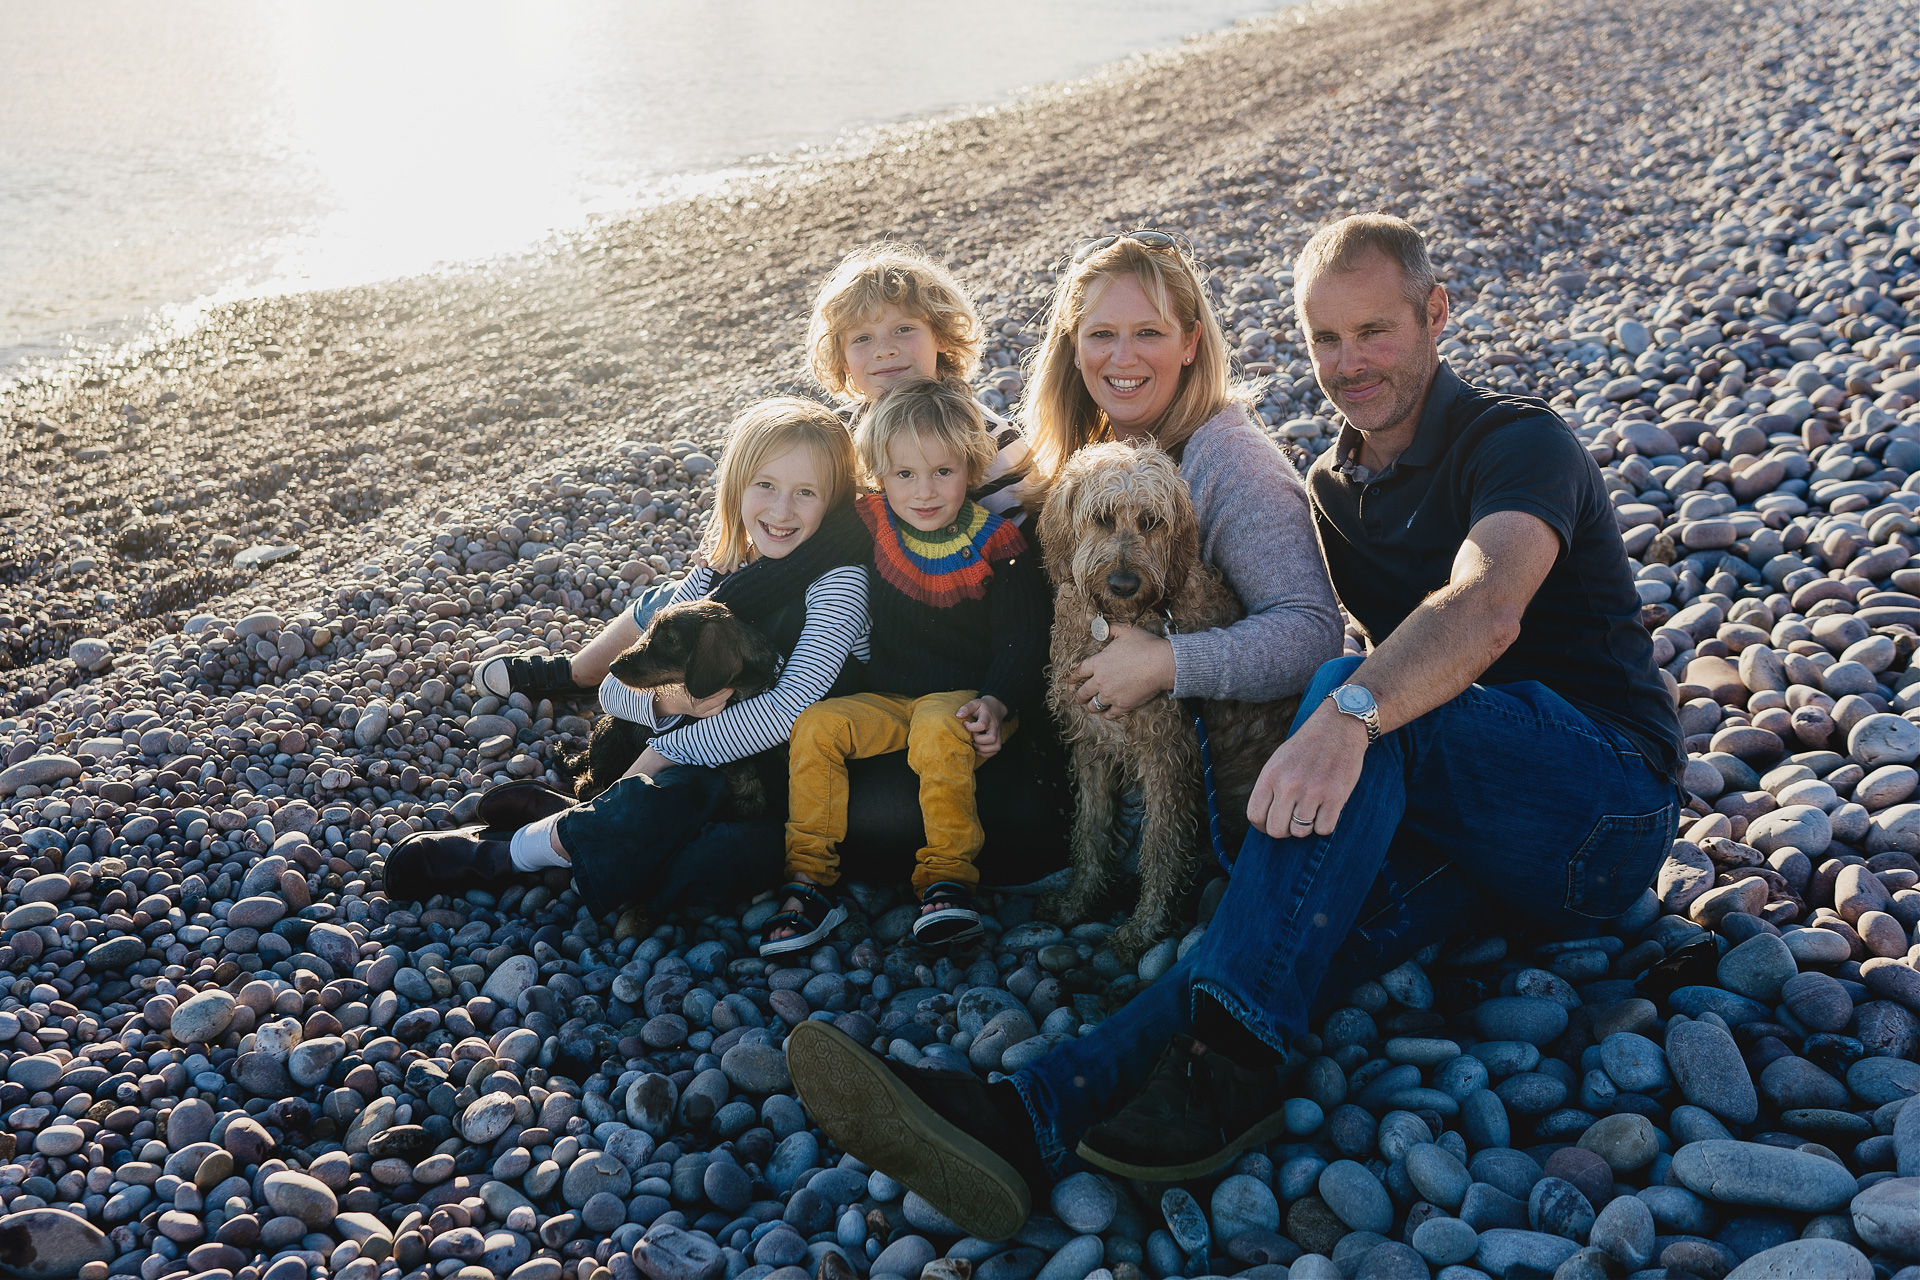 A family group photograph on a beach